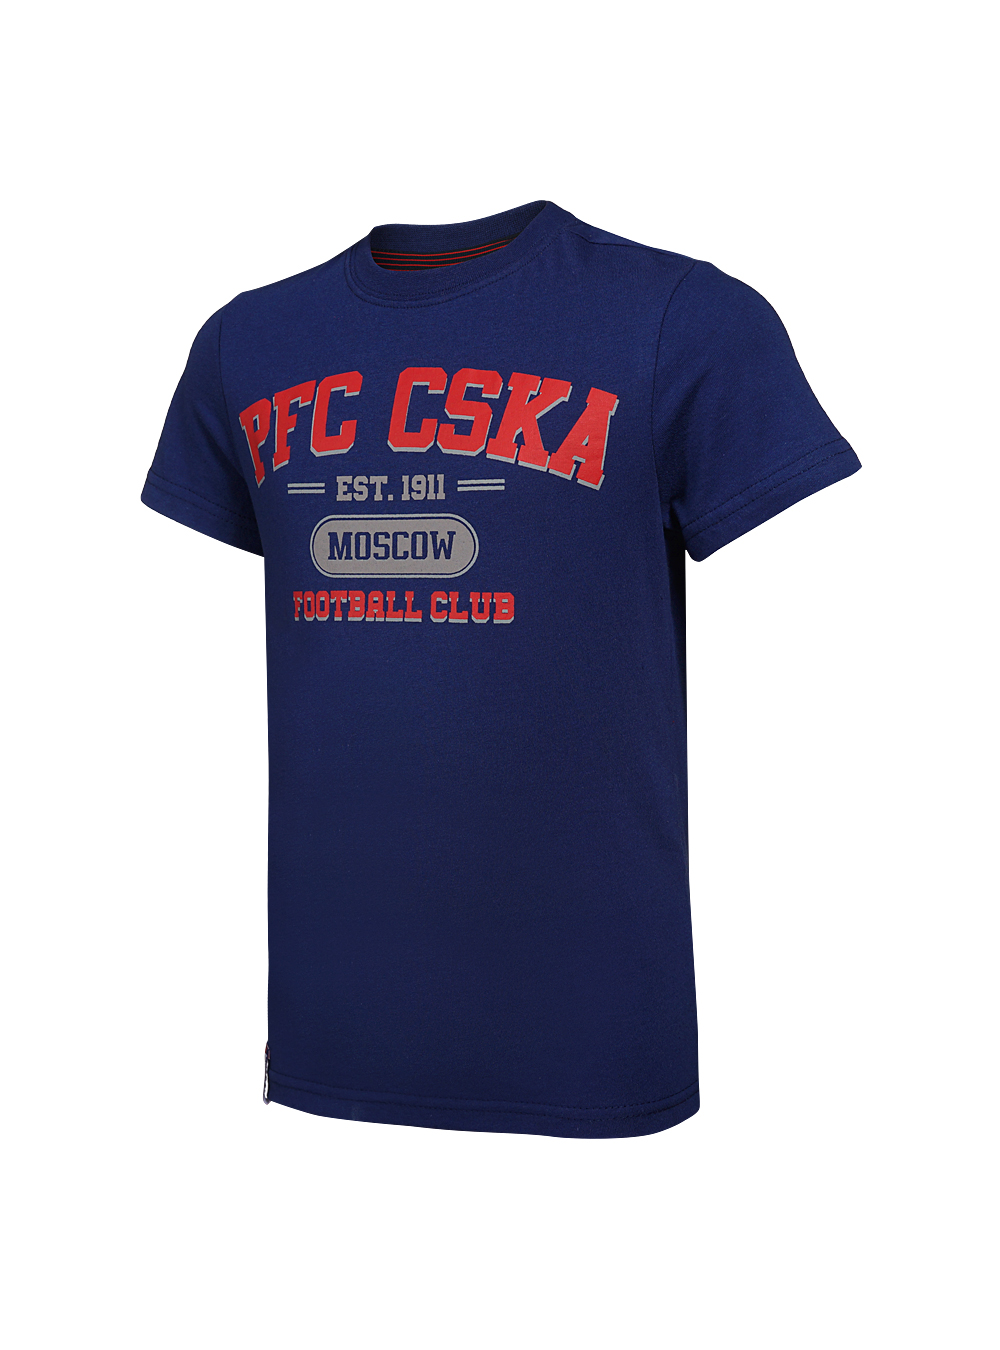 Футболка детская  PFC CSKA Moscow синяя (128) ПФК ЦСКА CSK18031 - фото 1